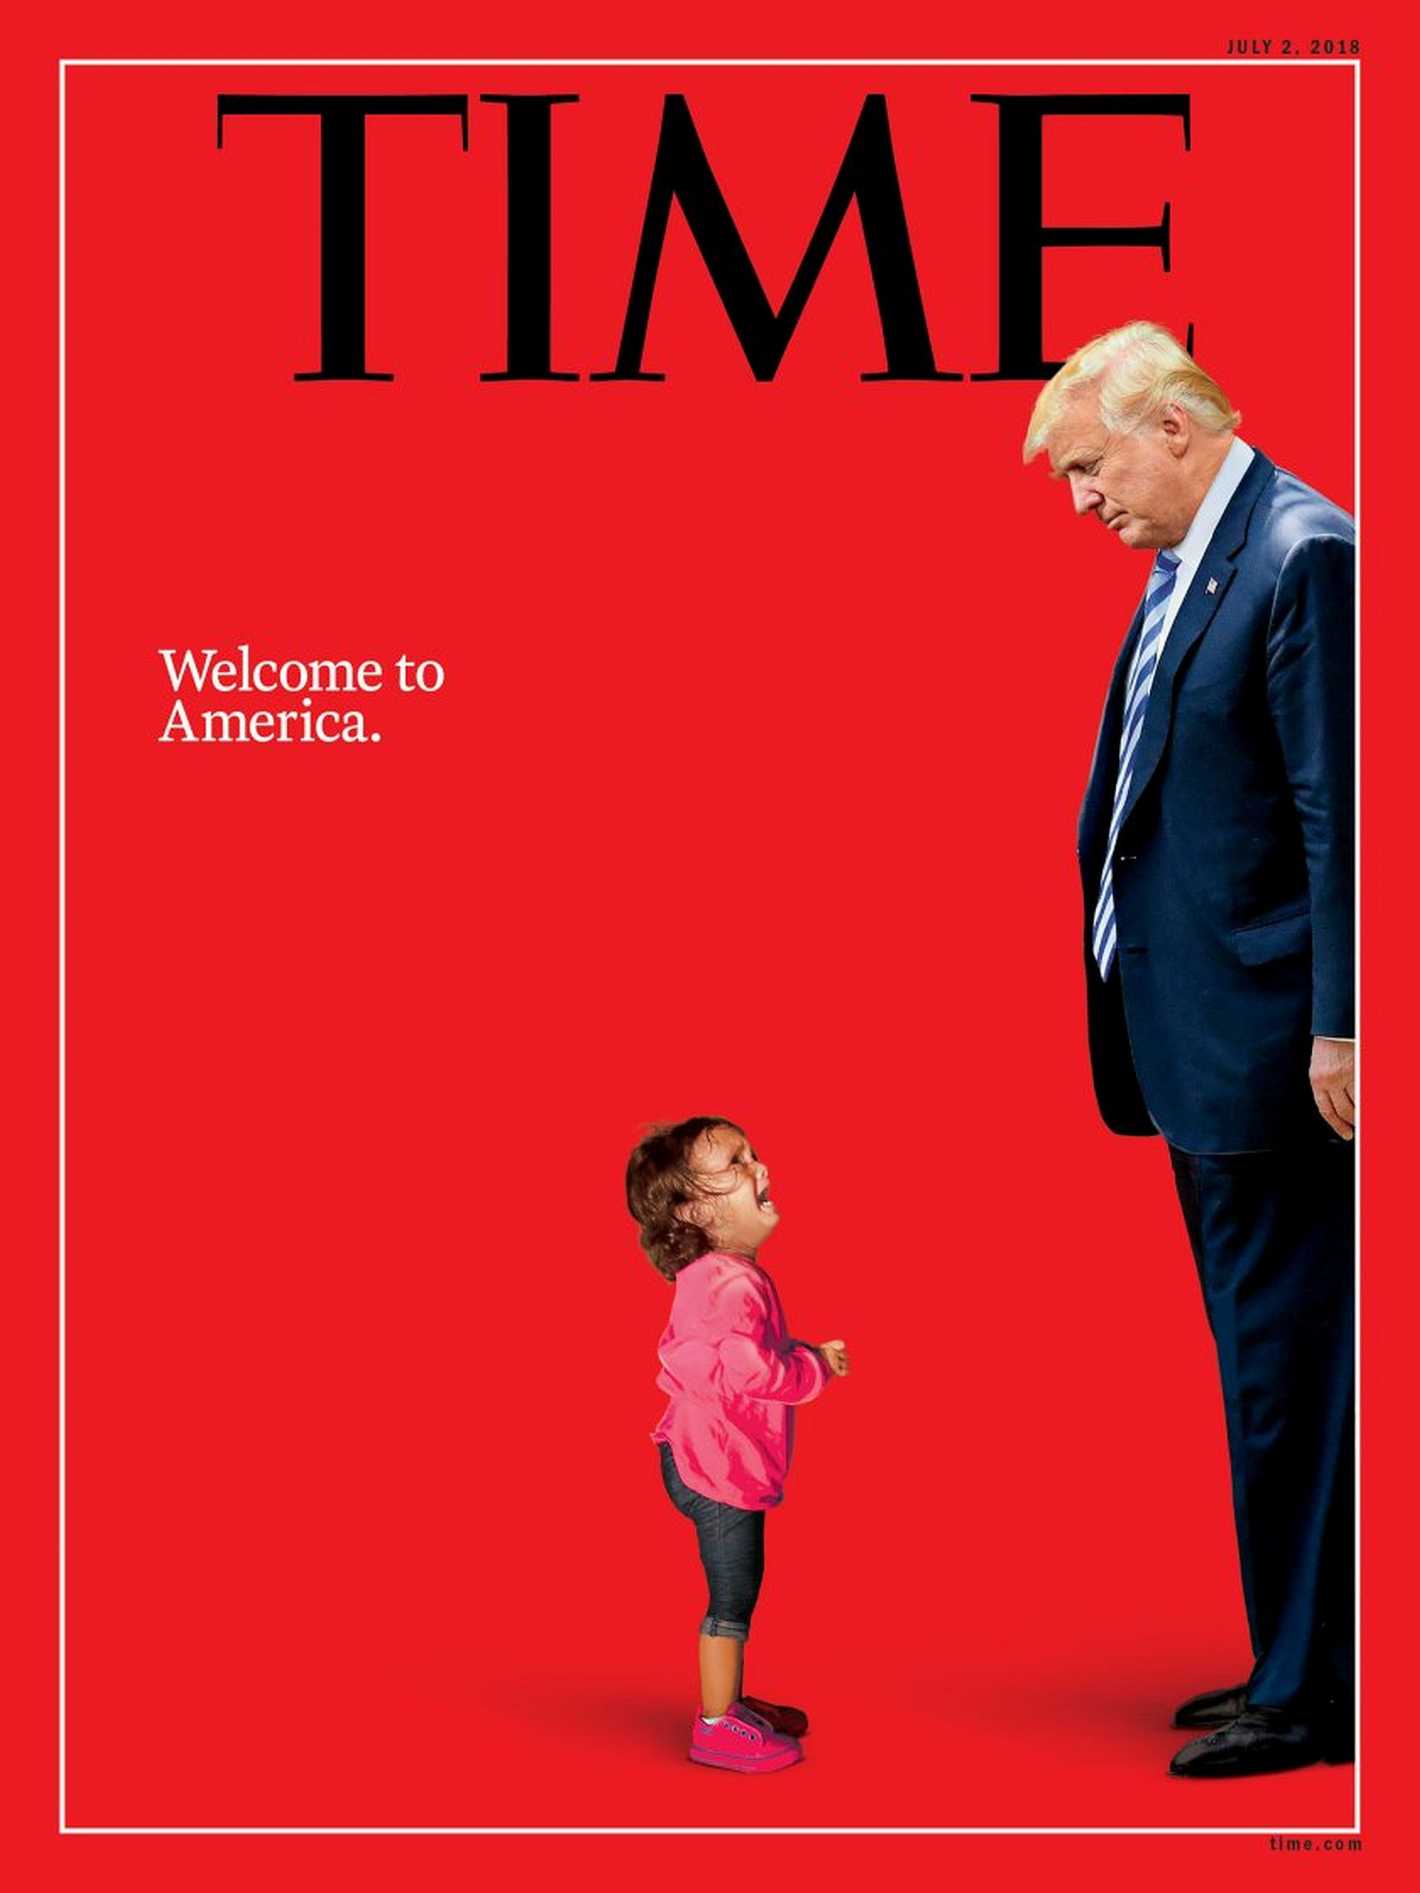 La historia detrás de la portada de Time de la que hablan todos